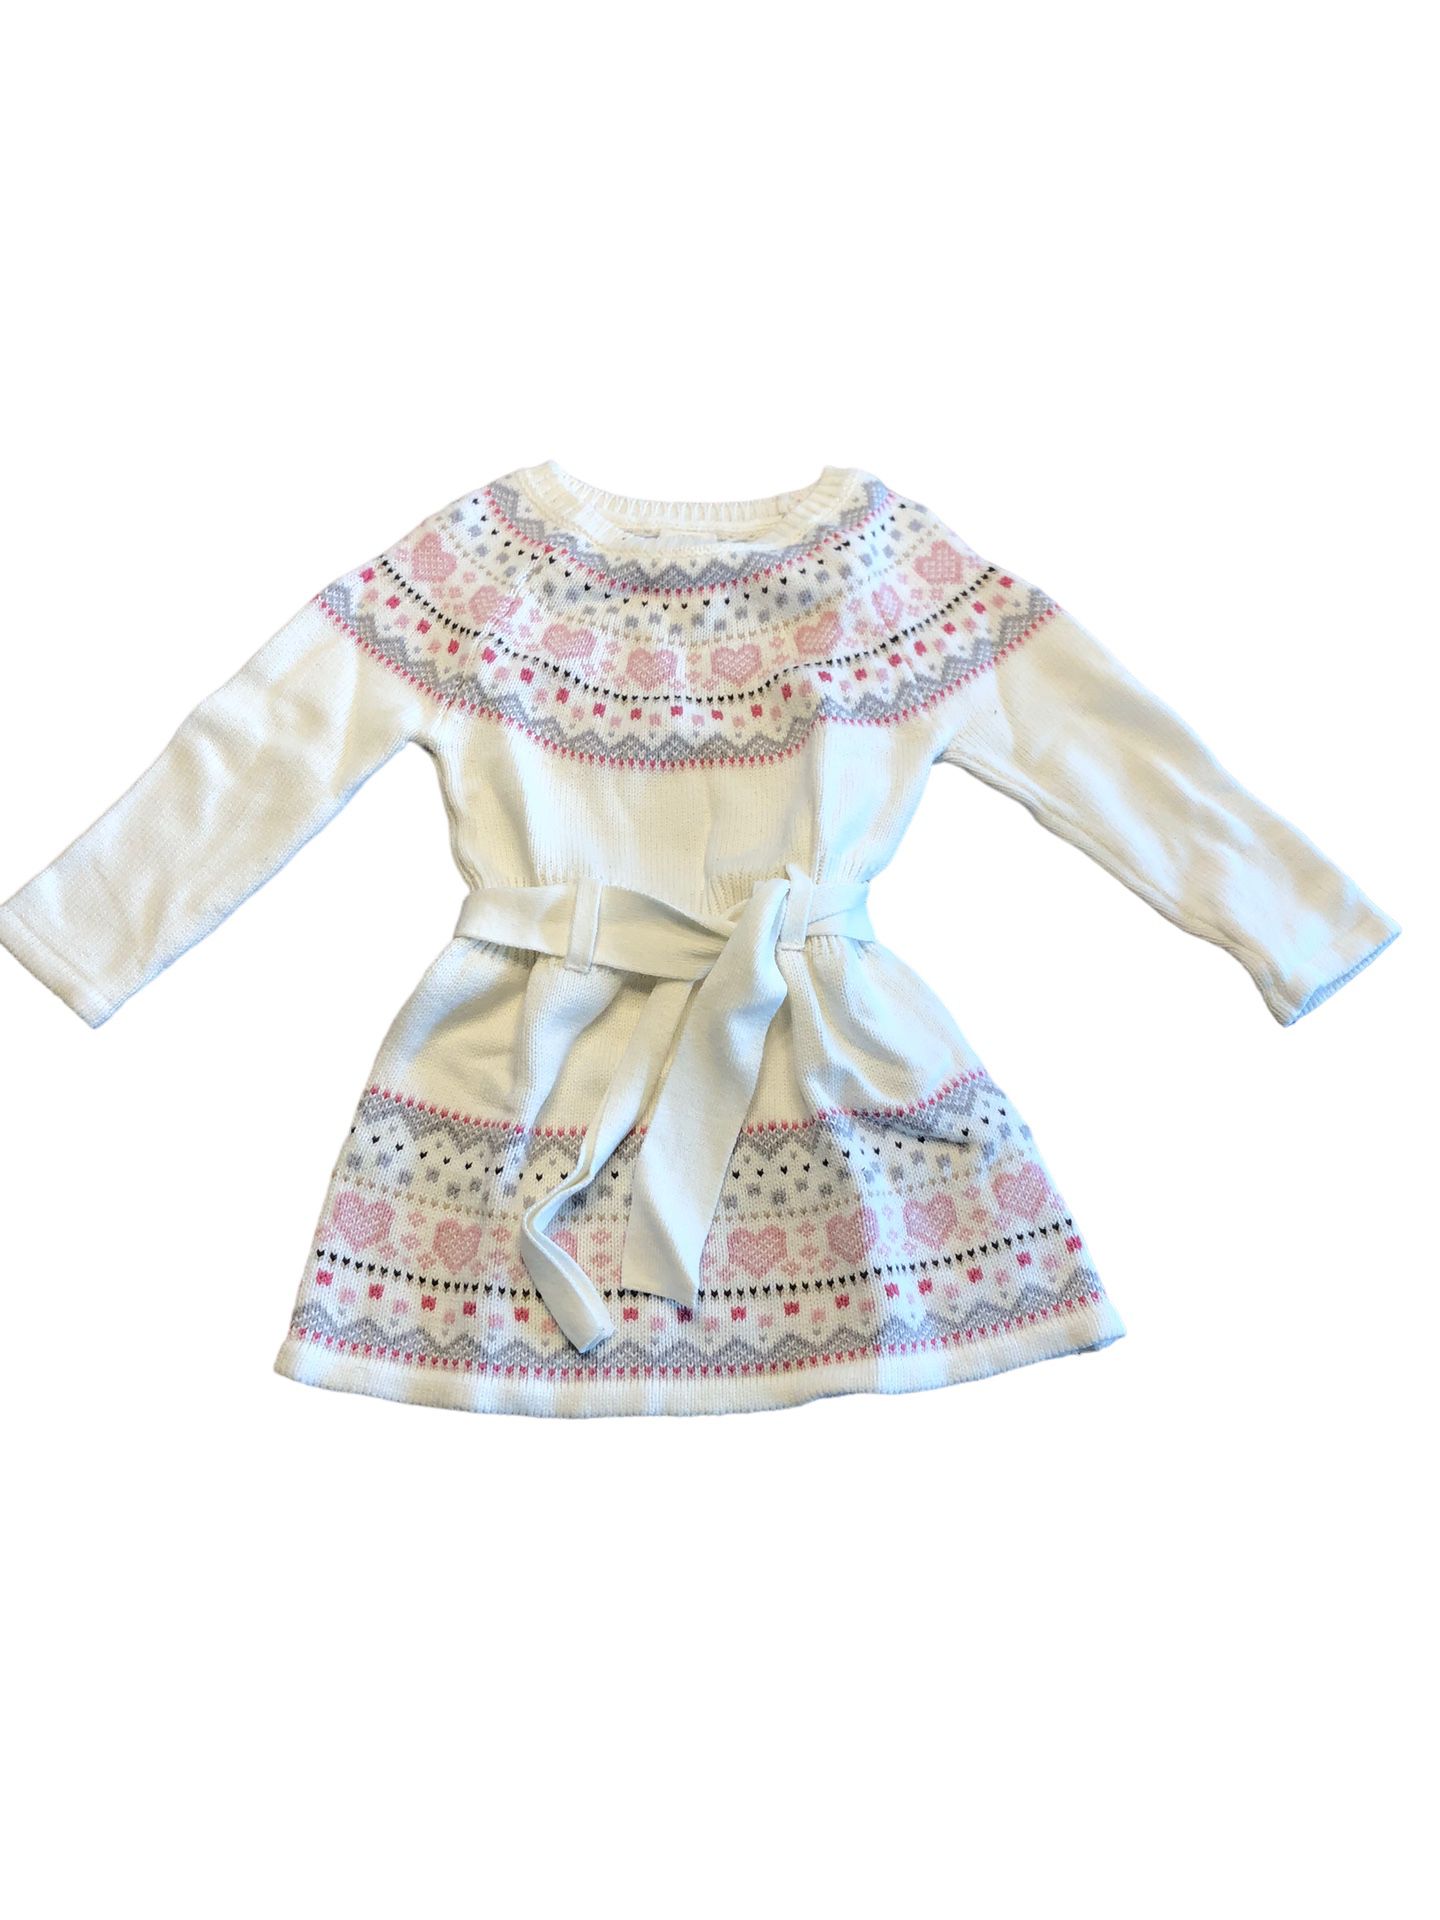 EUC 18 m White w/Pink & Grey Isles Pattern Sweater Dress